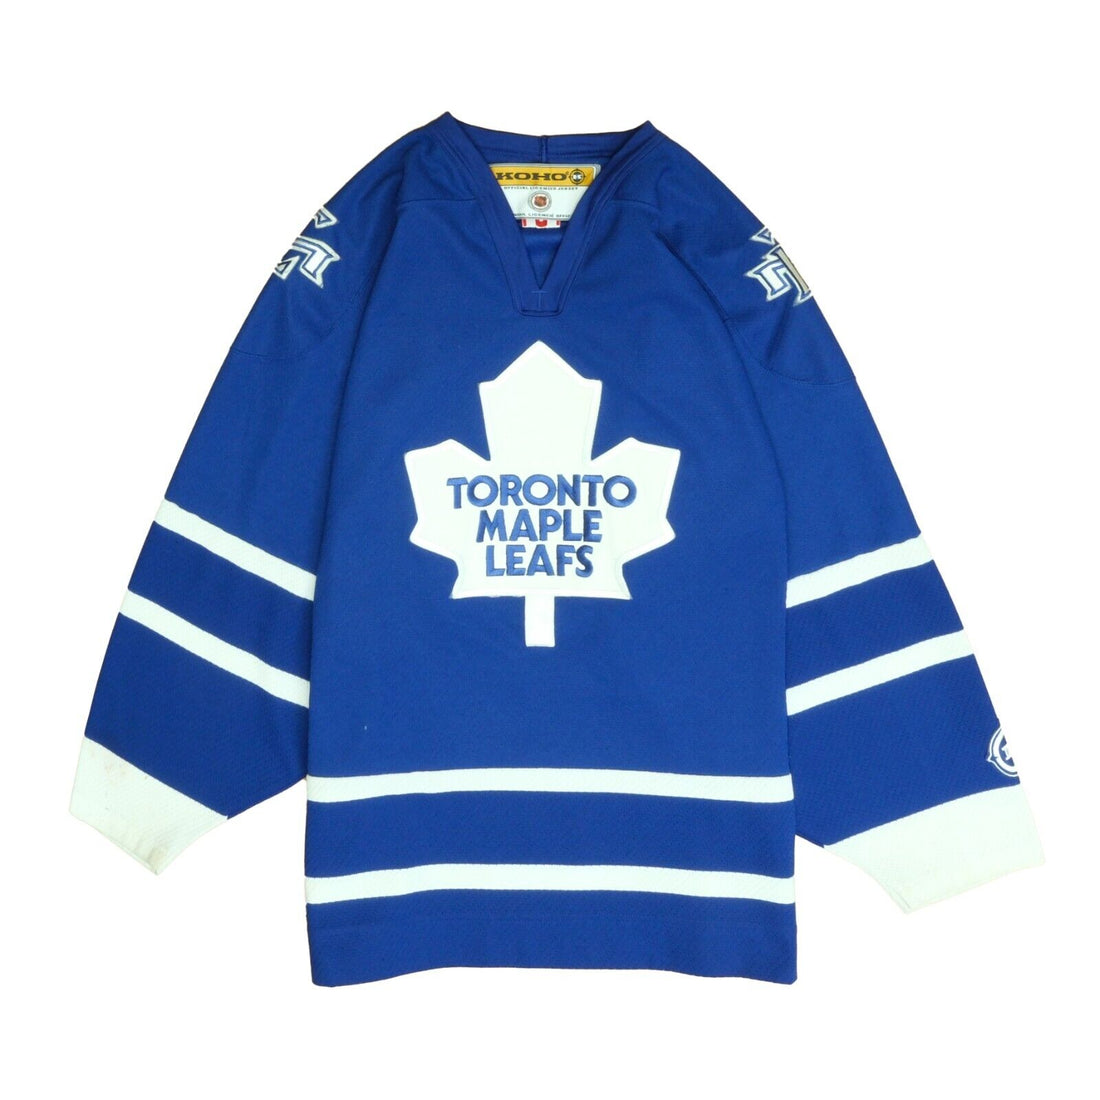 Vintage Reebok Toronto Maple Leafs Hoodie Size Medium/large 